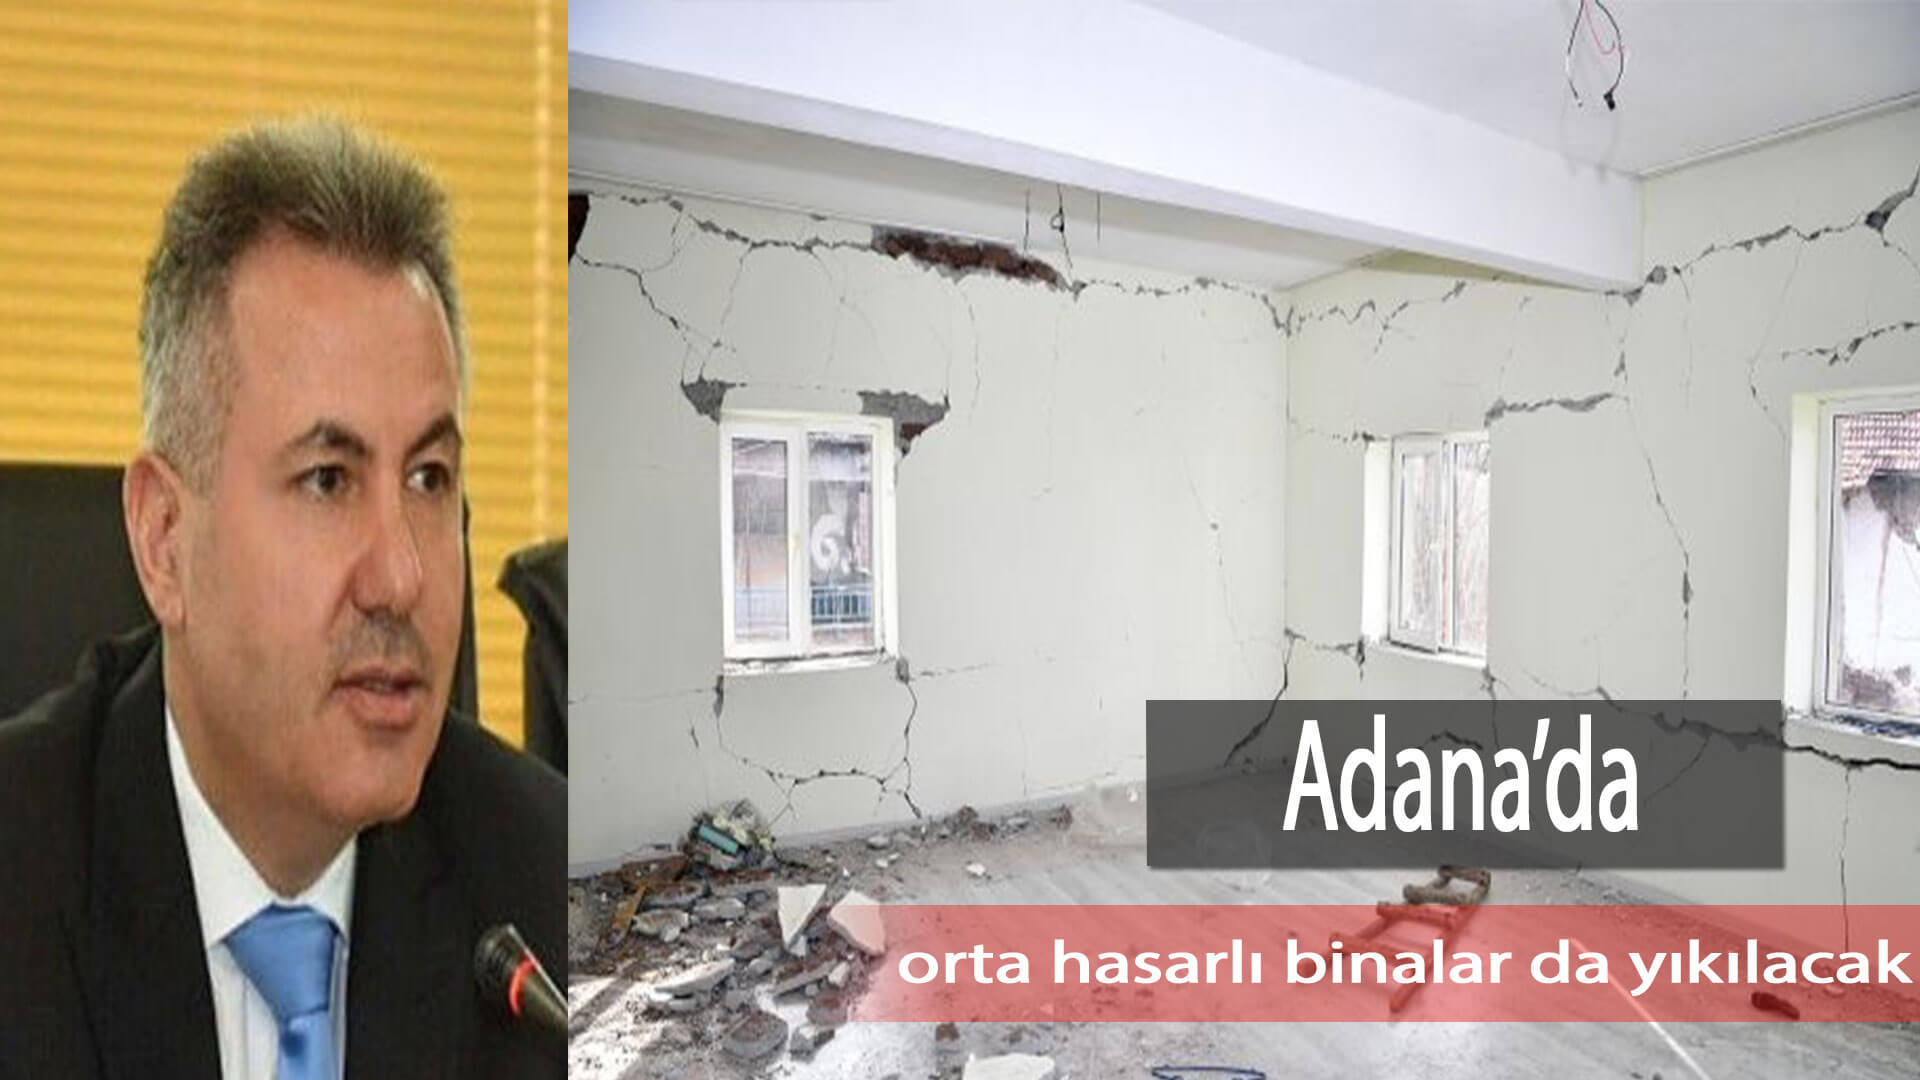 Adana’da orta hasarlı binalar da yıkılacak